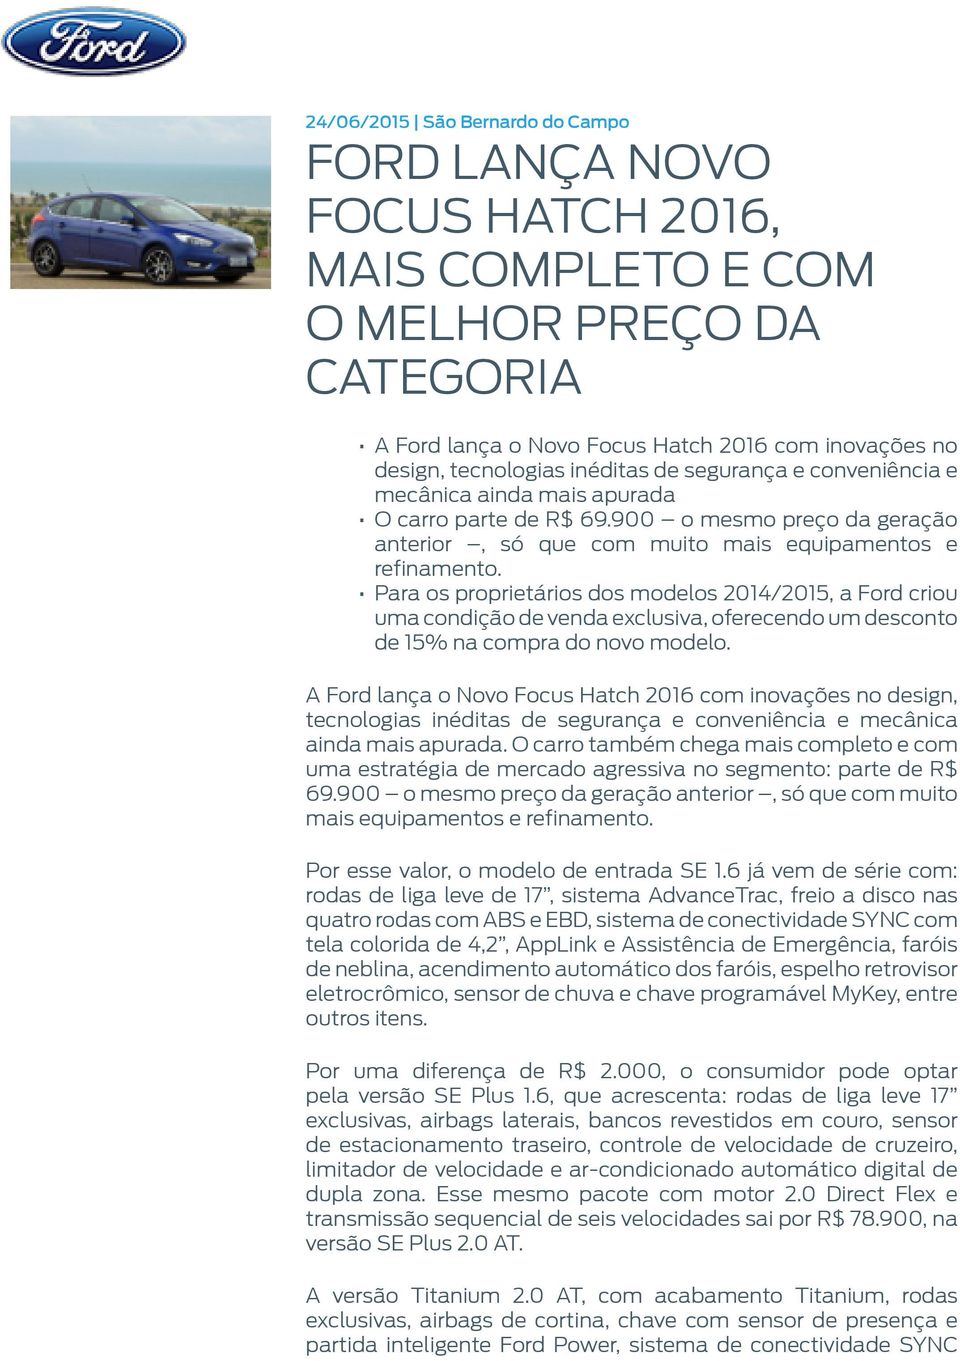 Para os proprietários dos modelos 2014/2015, a Ford criou uma condição de venda exclusiva, oferecendo um desconto de 15% na compra do novo modelo.